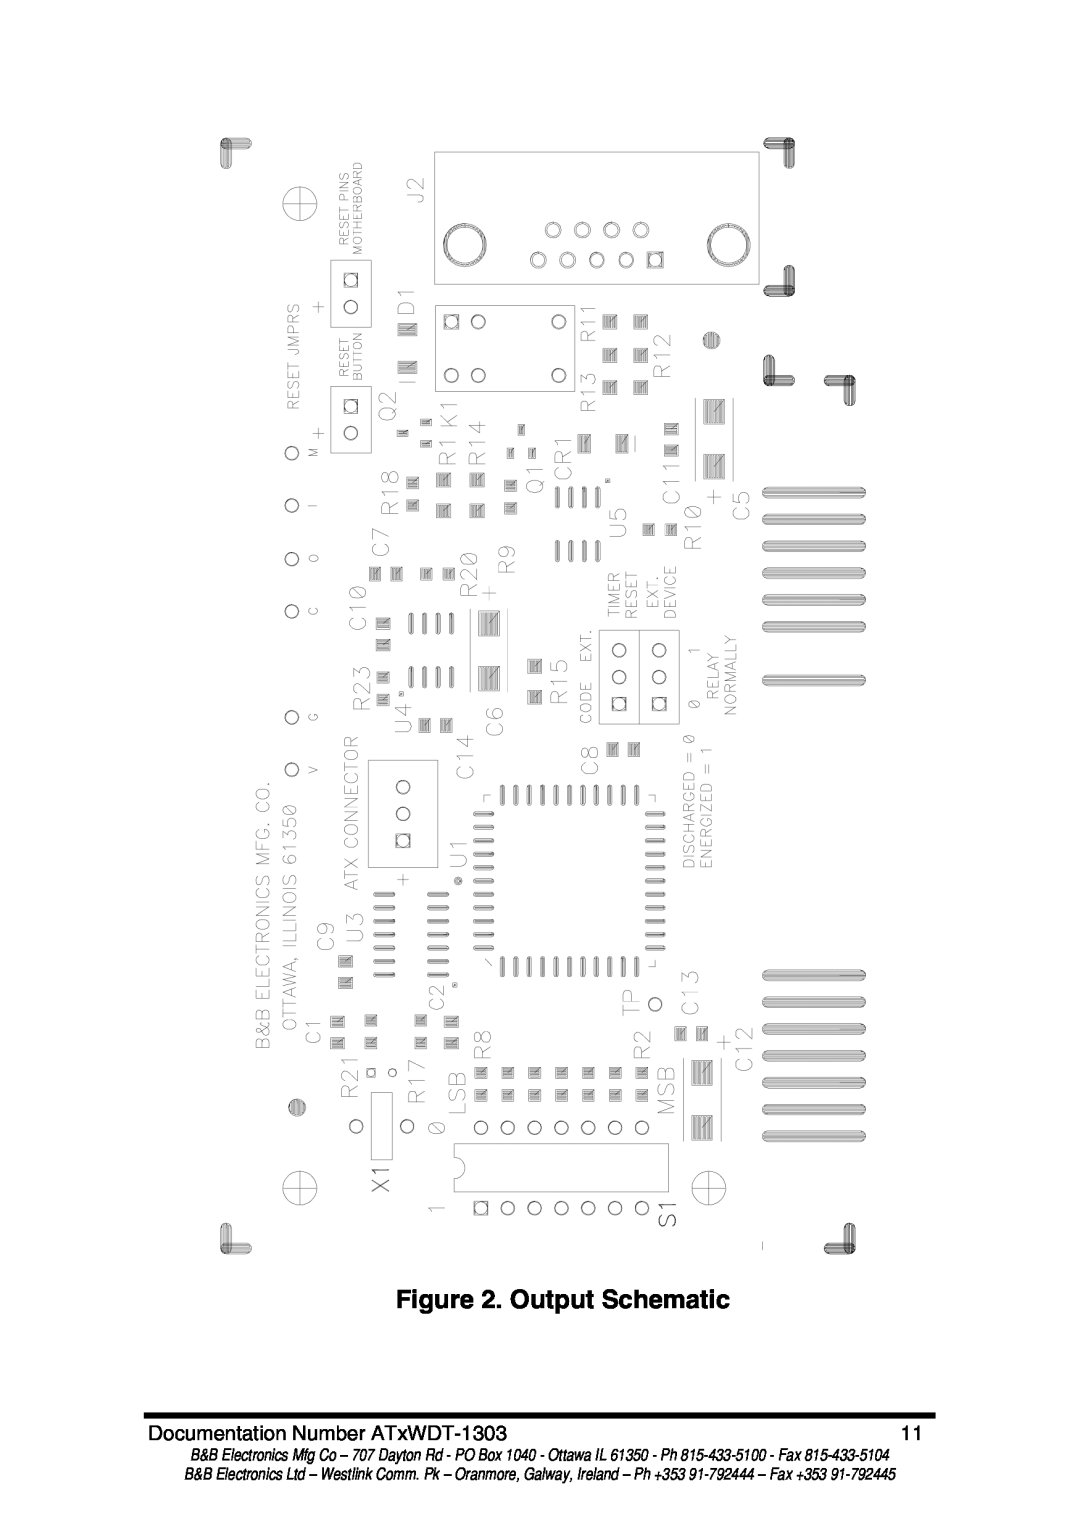 B&B Electronics ATRWDT, ATXWDT manual Output Schematic, Documentation Number ATxWDT-1303 